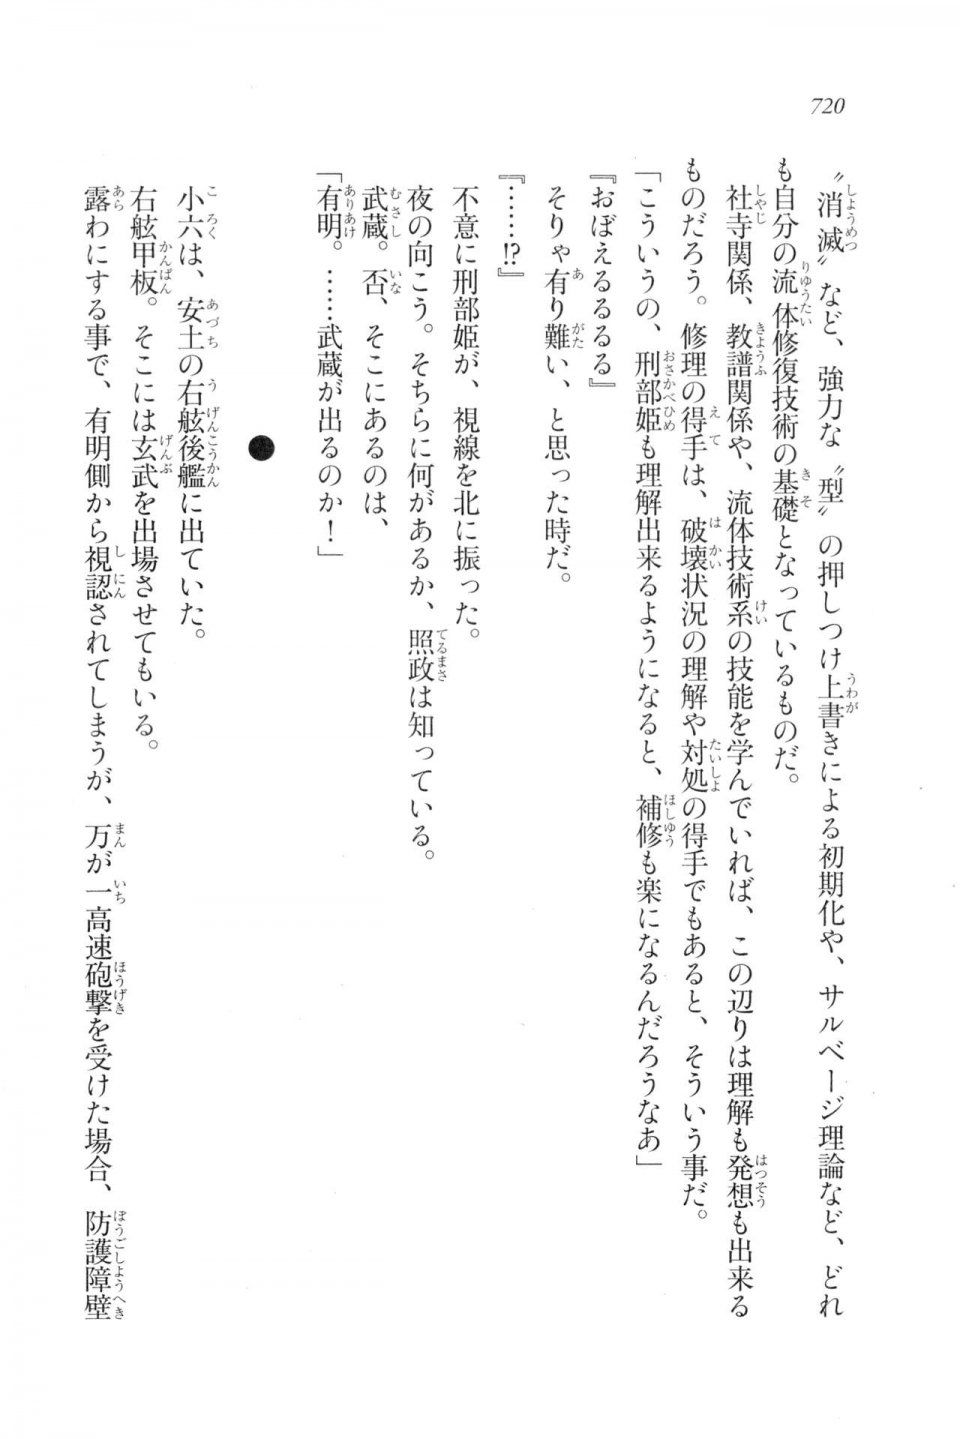 Kyoukai Senjou no Horizon LN Vol 20(8B) - Photo #720